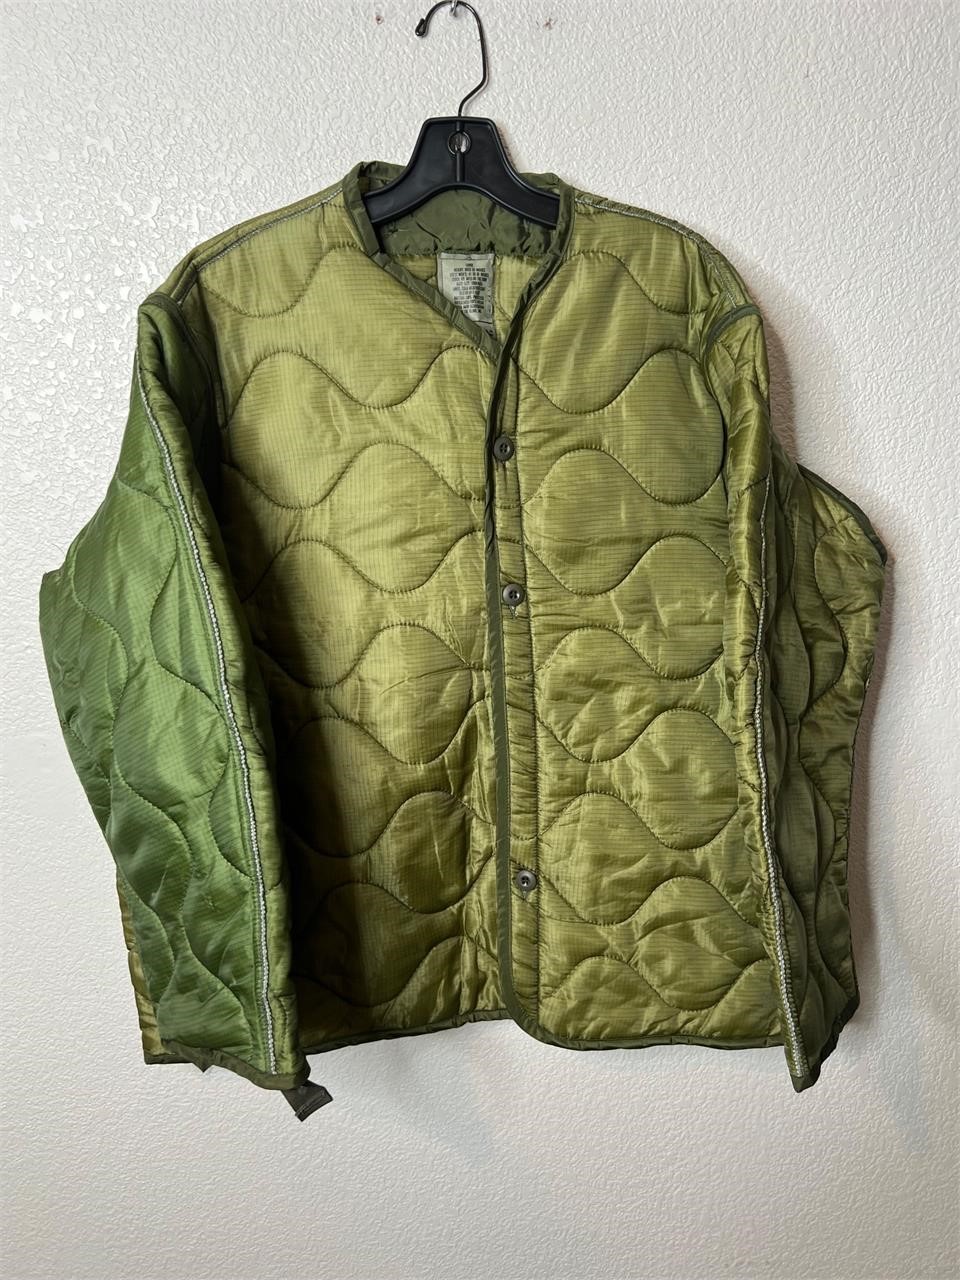 Vintage Cold Weather Jacket Military Liner